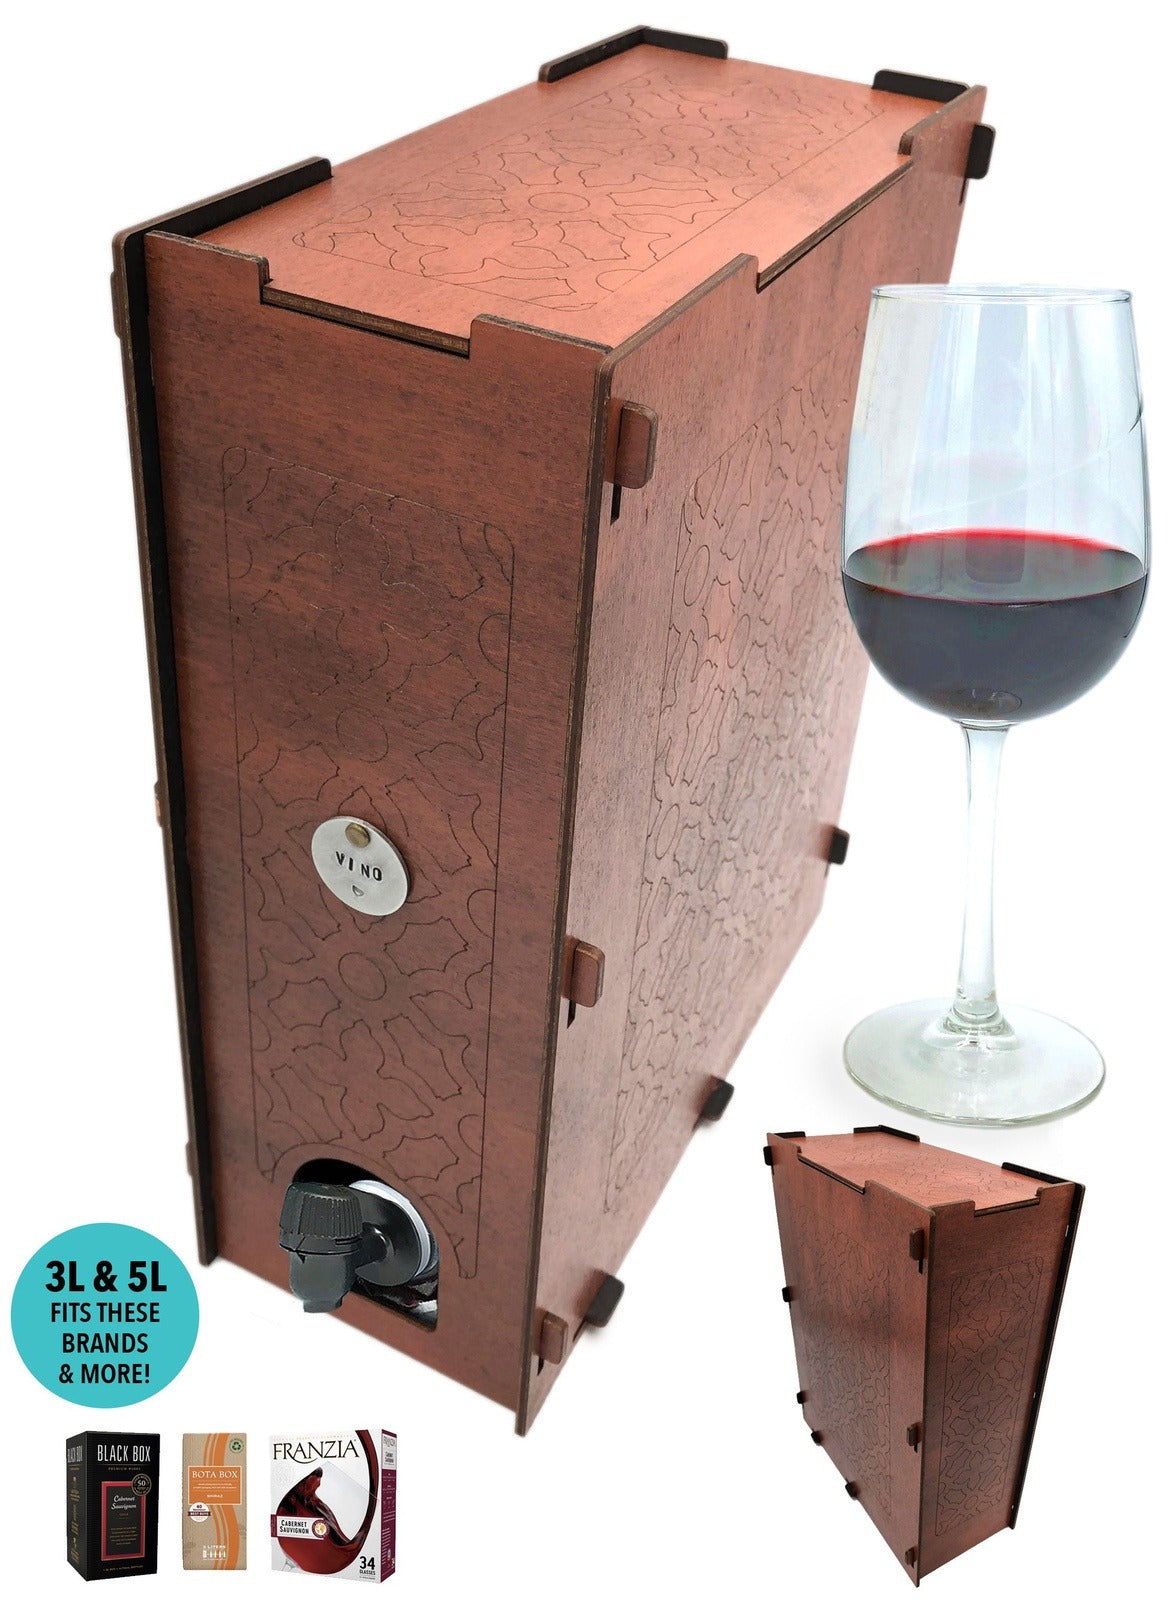 Camel Rust Moroccan Boxed Wine Cover - 3L + 5L Bota Box, Black Box, Franzia, & More